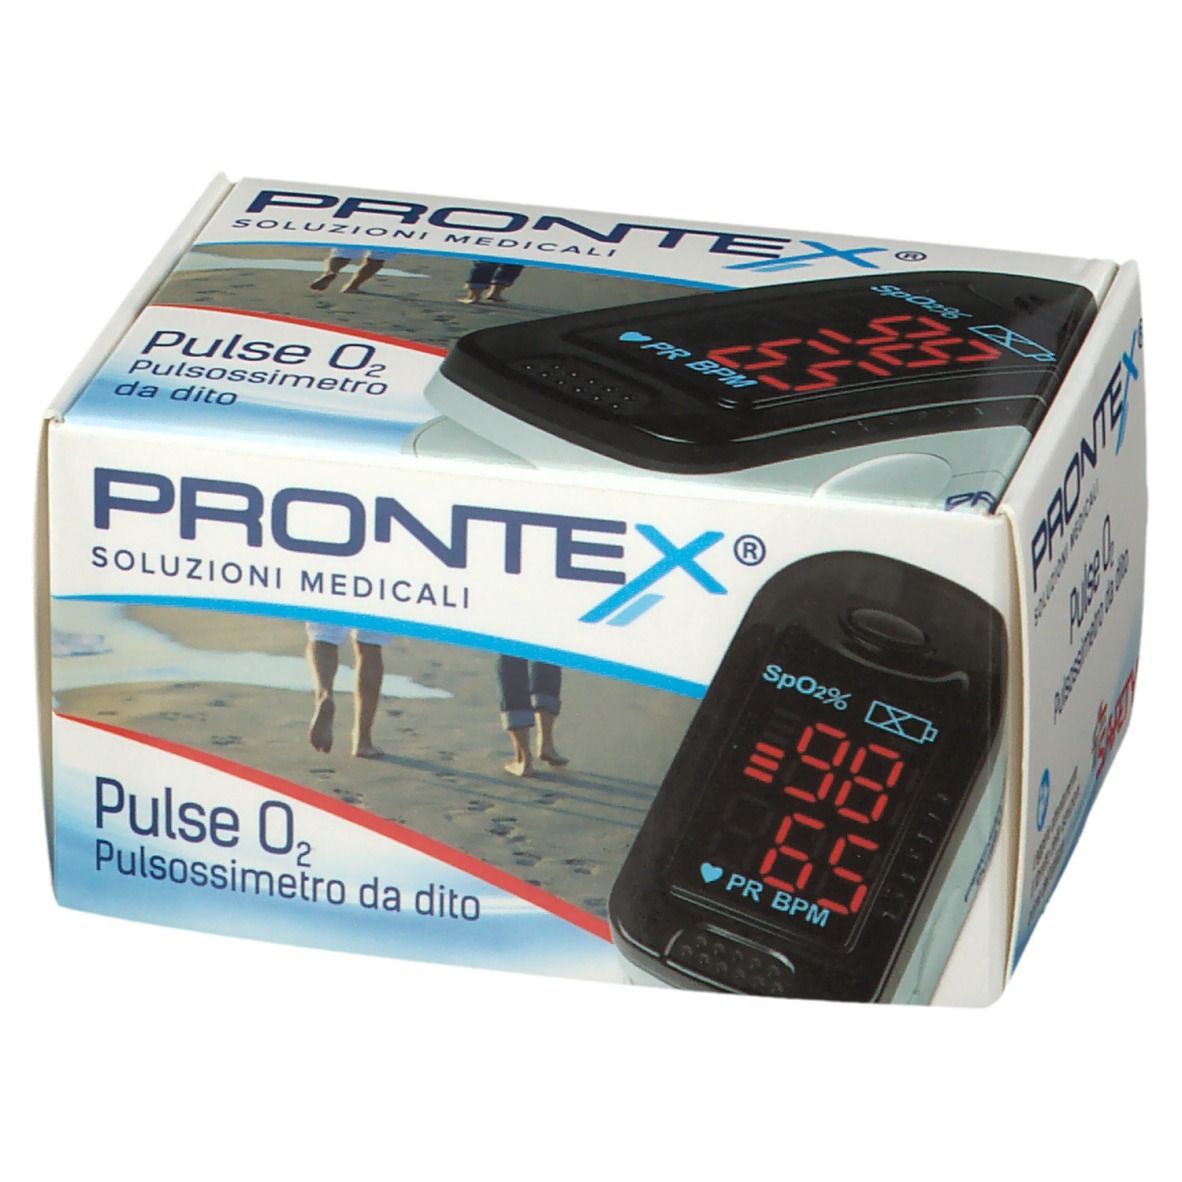 PRONTEX® Pluse O2 Pulsossimetro da Dito